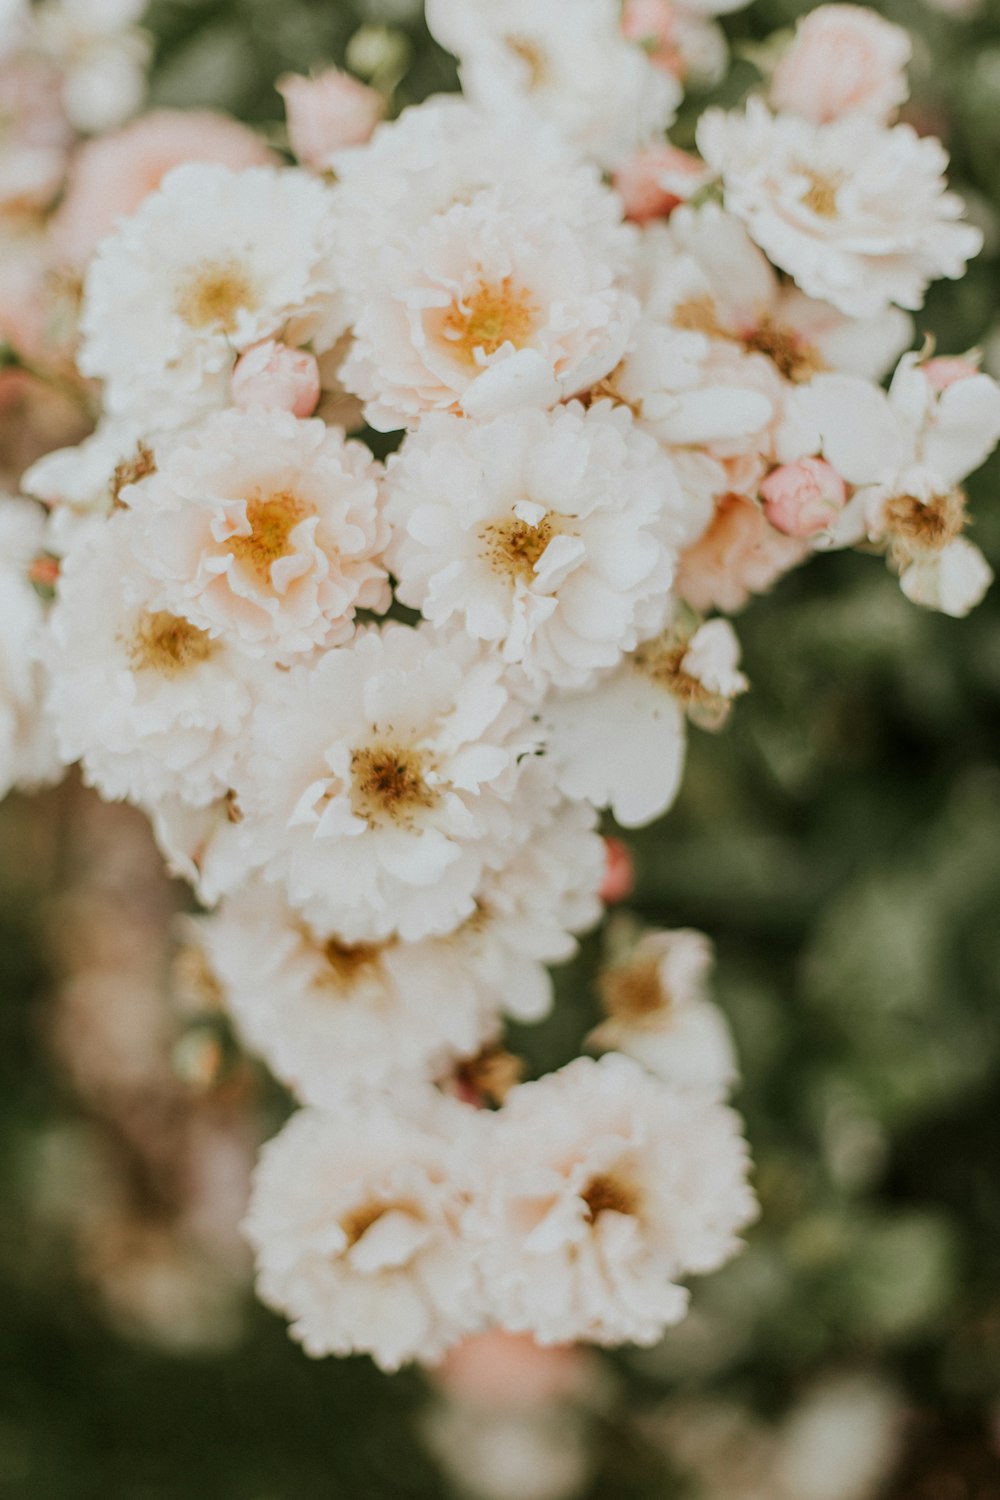 flores de pétalos blancos